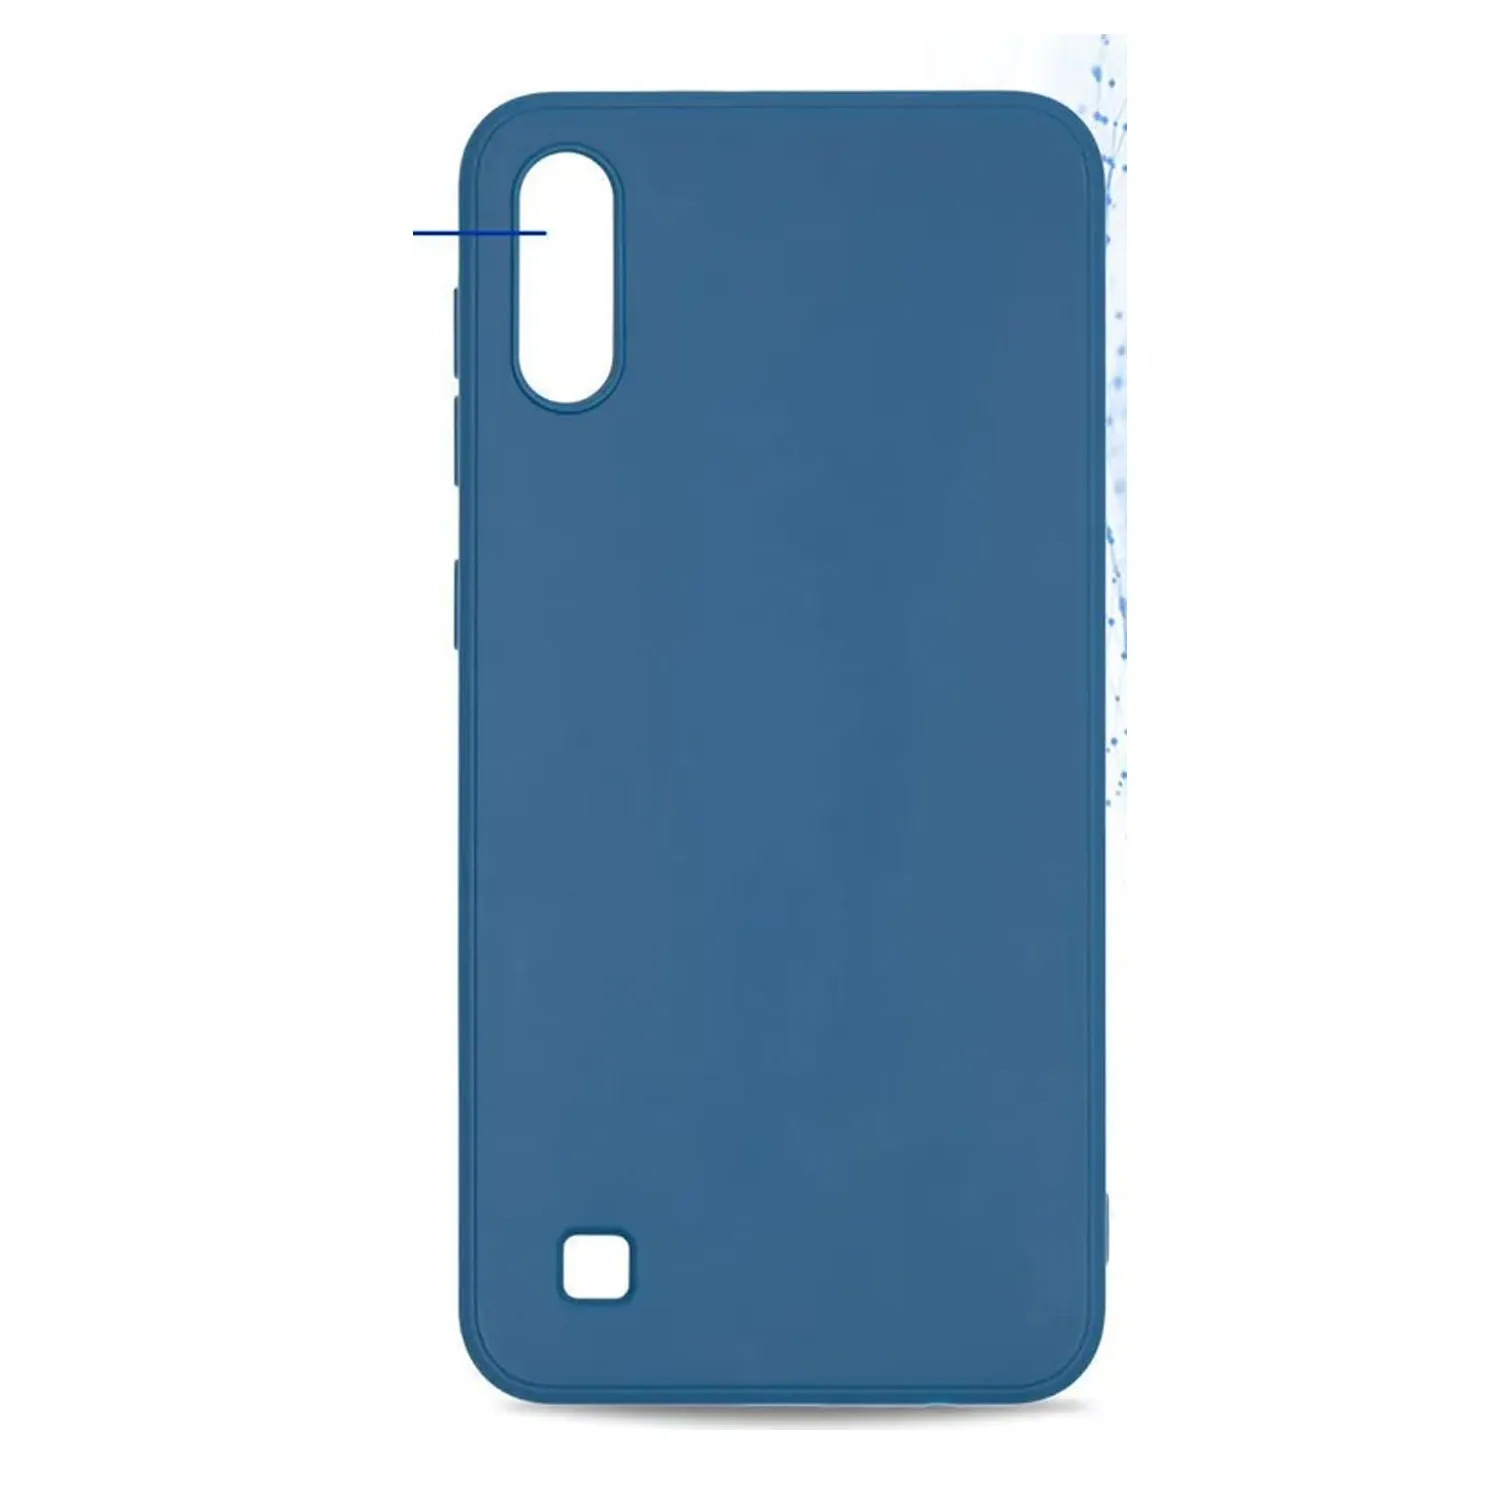 Cиликоновый чехол FASHION CASE Samsung A10 (темно-синий)